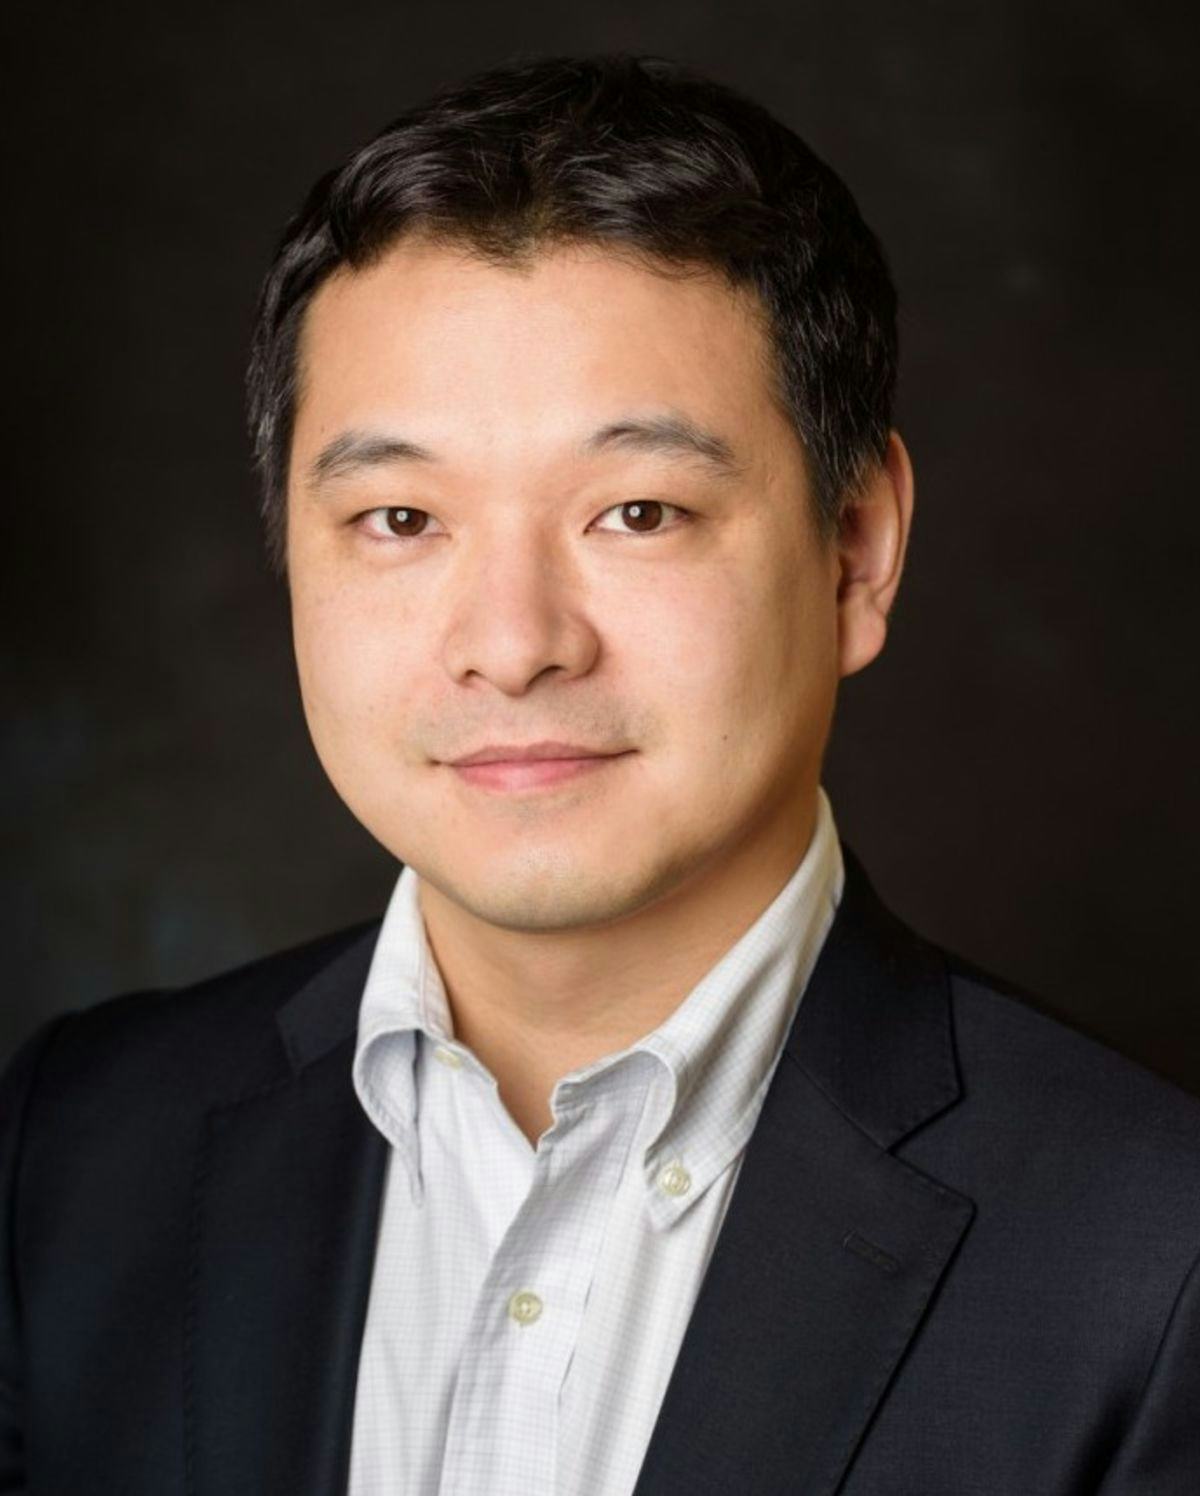 Professor Jae Kim